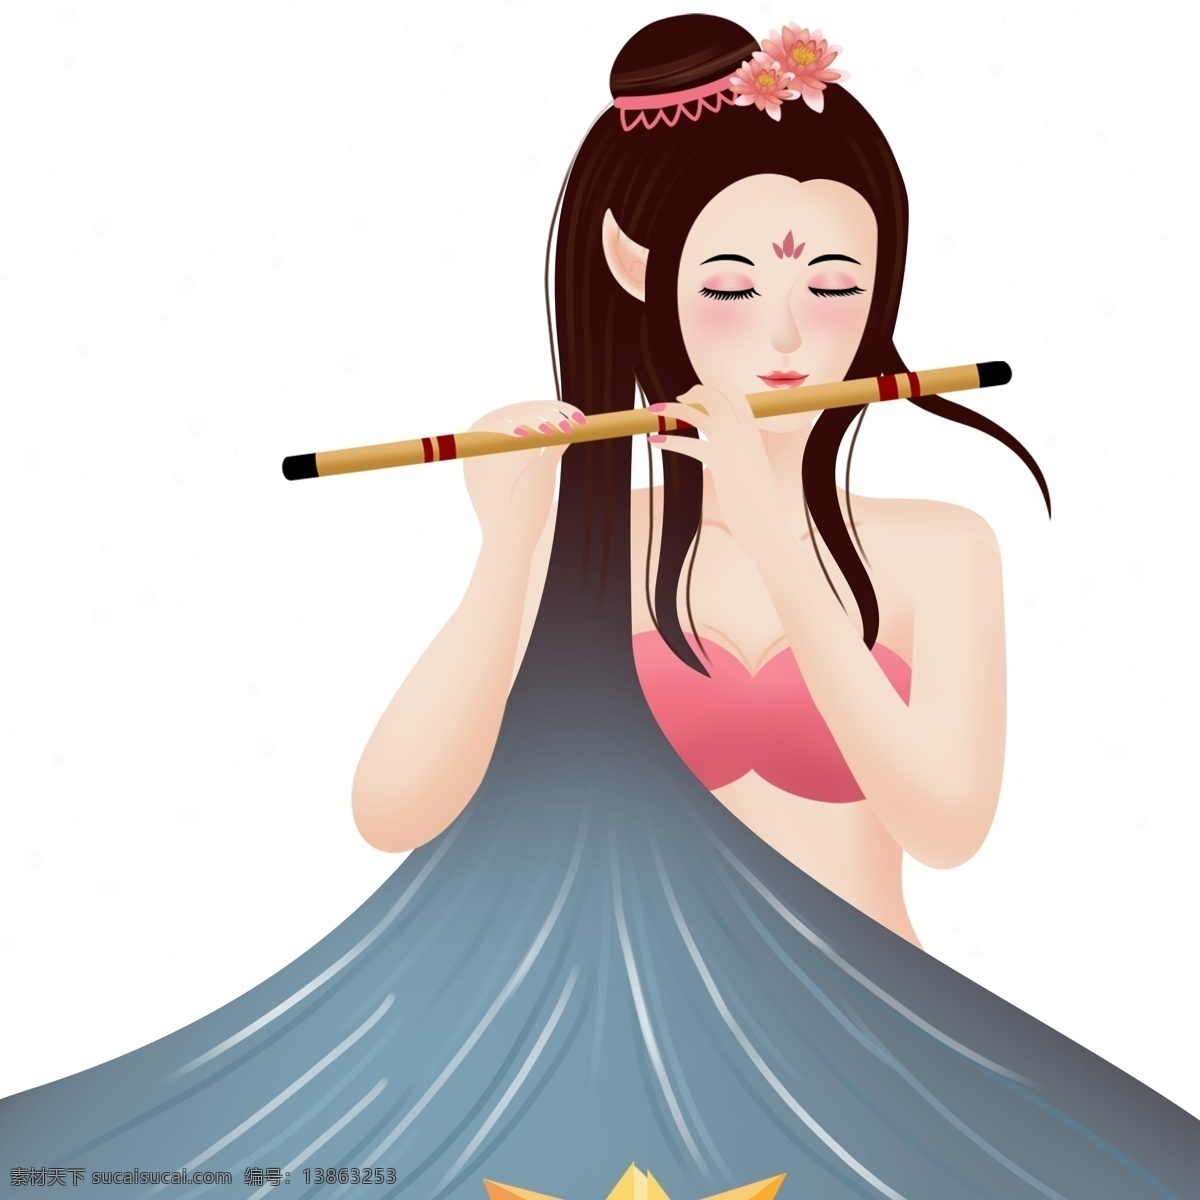 古风 优美 吹 笛子 美女 人物 手绘 中国风 插画 吹笛子 女子 乐器 文艺少女